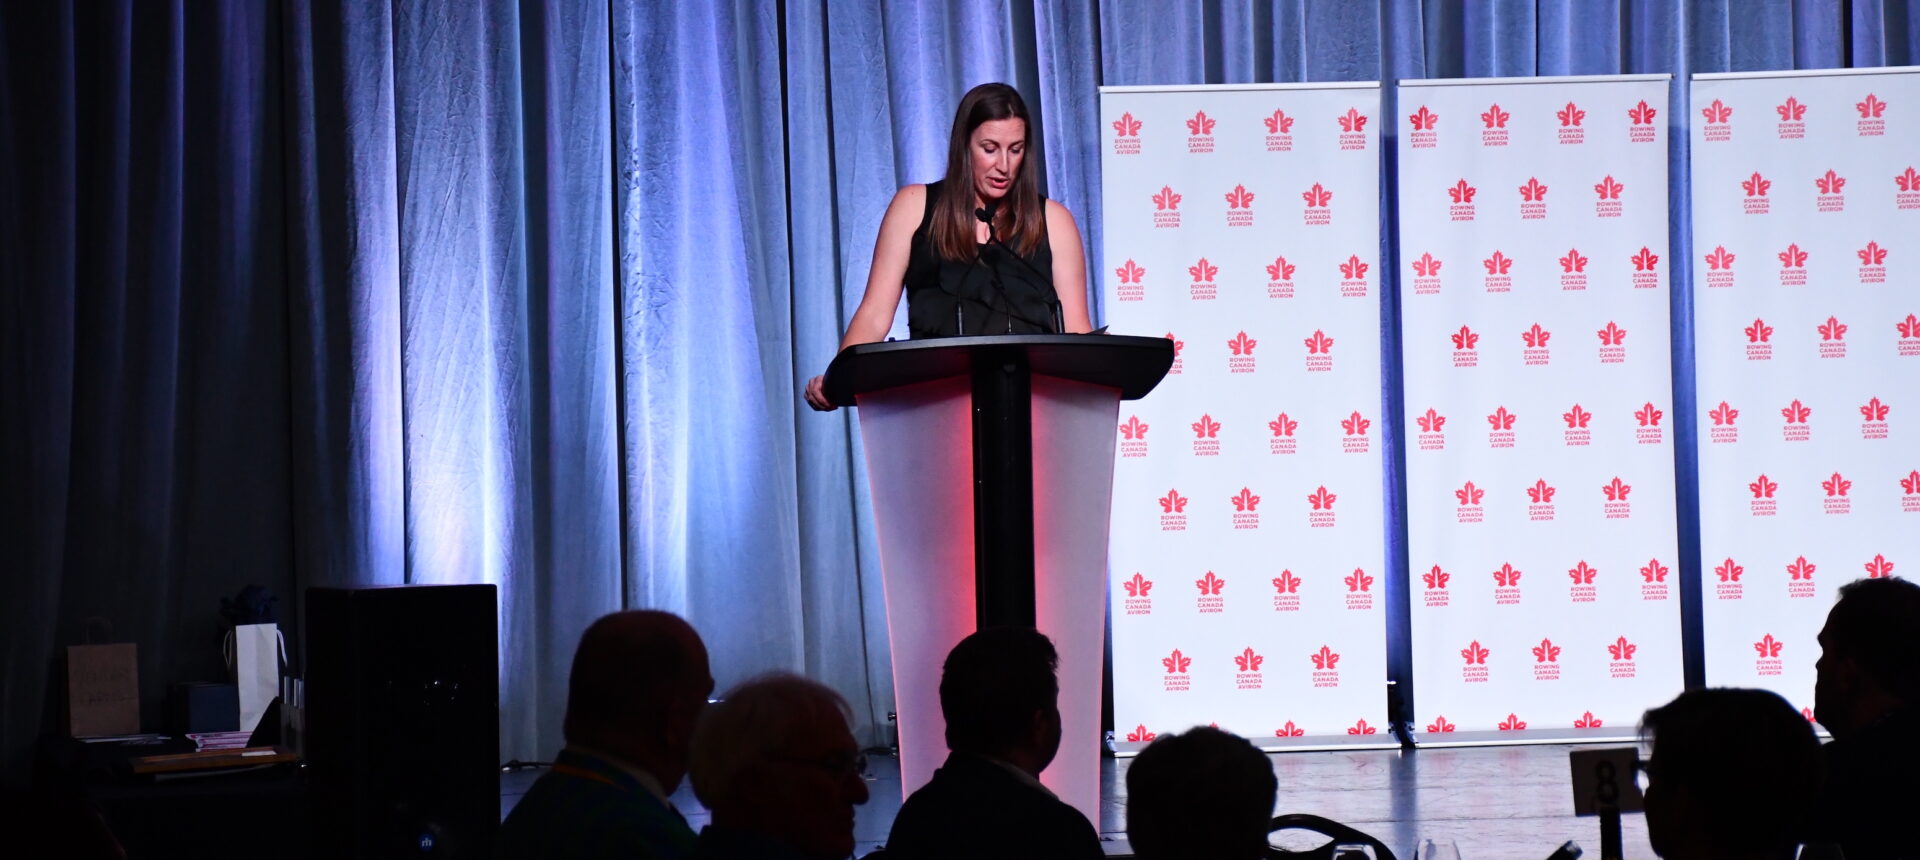 Rowing Canada Aviron célèbre les lauréats des Prix d’excellence et rassemble la communauté d’aviron à la Conférence nationale 2024